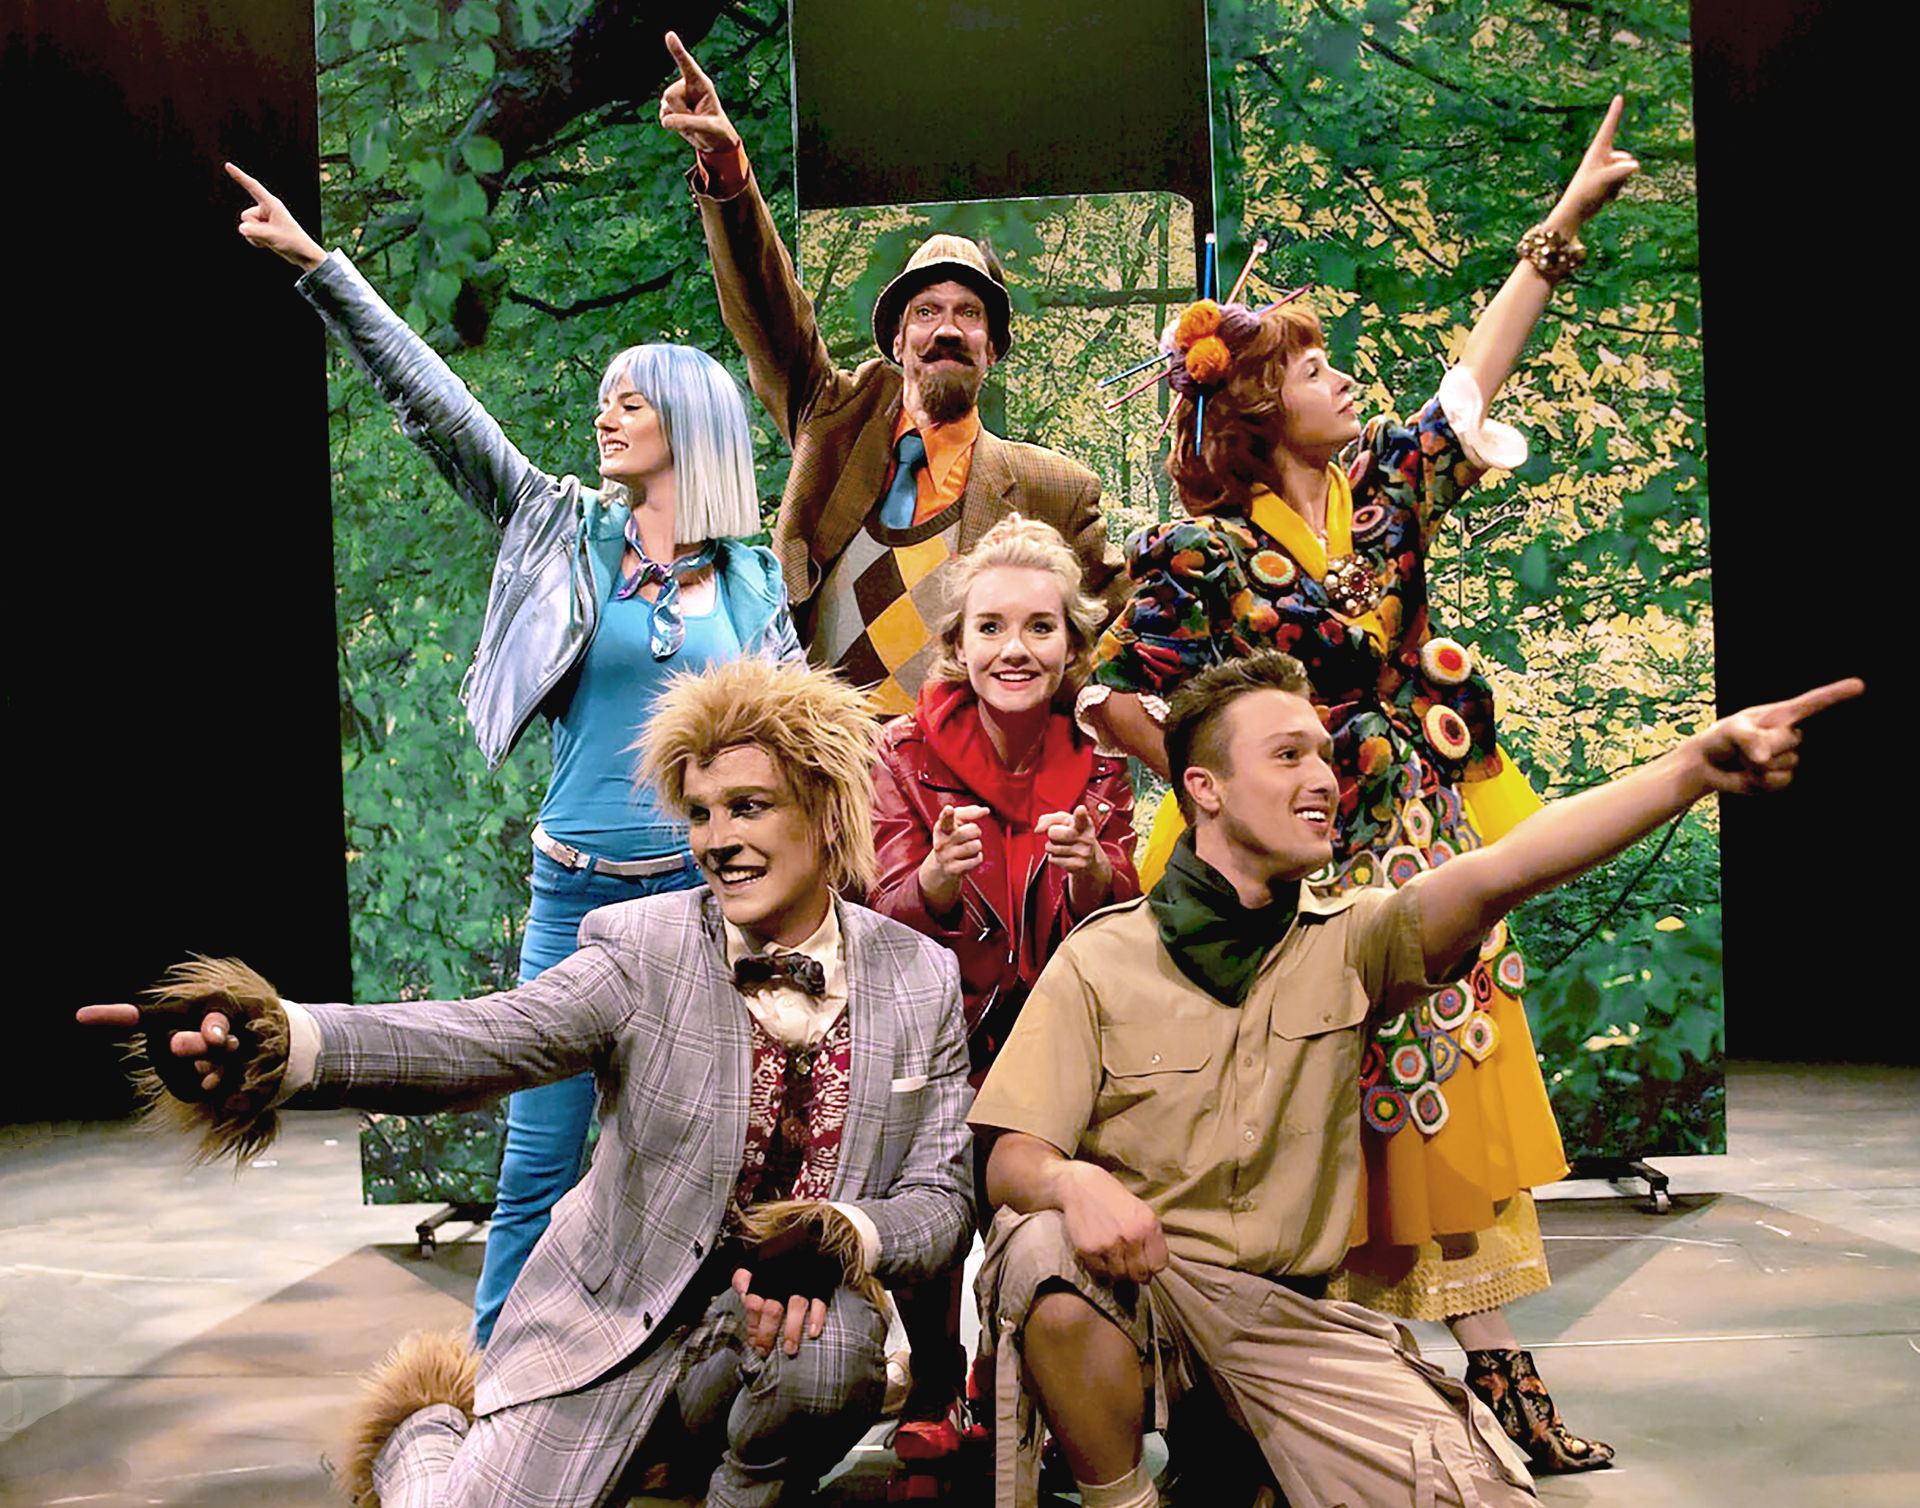 in 2019 speelde Langhout Theaterproducties de landelijke première van Roodkapje in De Tamboer